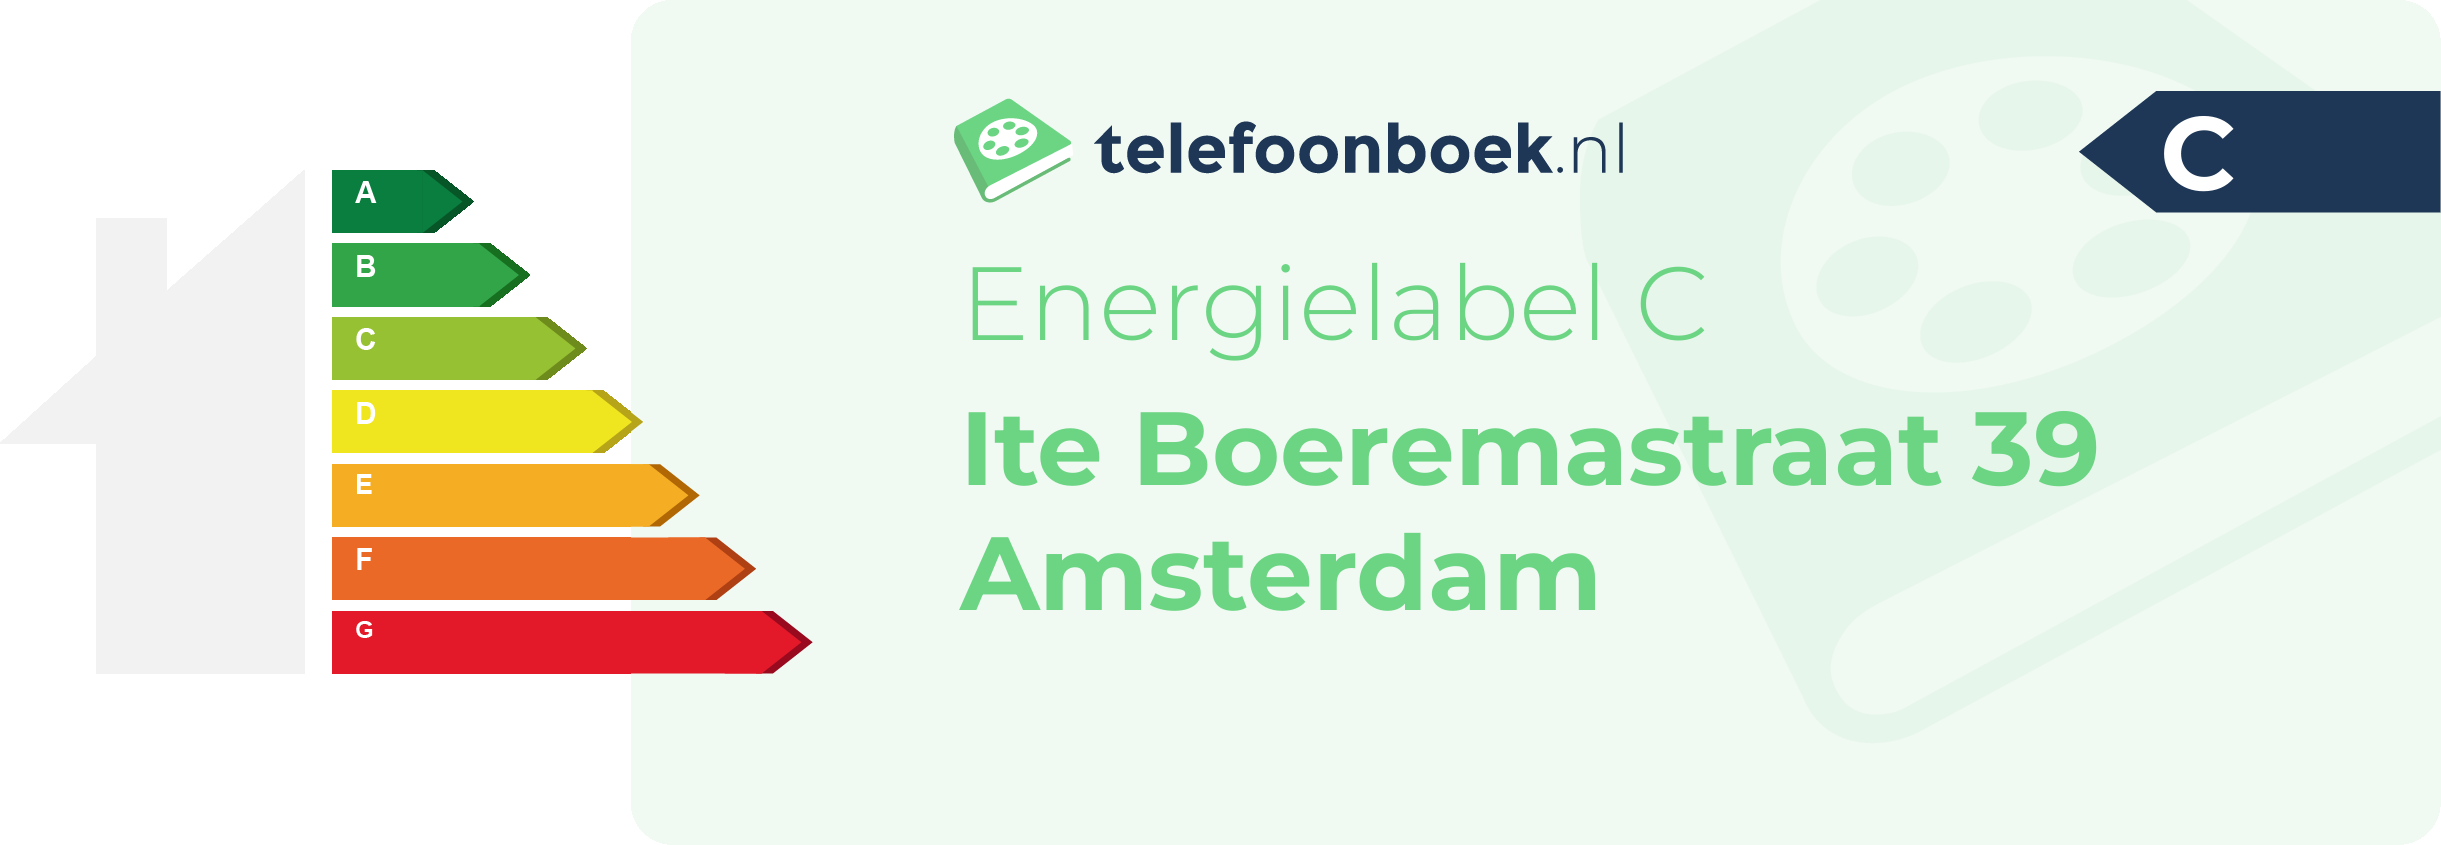 Energielabel Ite Boeremastraat 39 Amsterdam